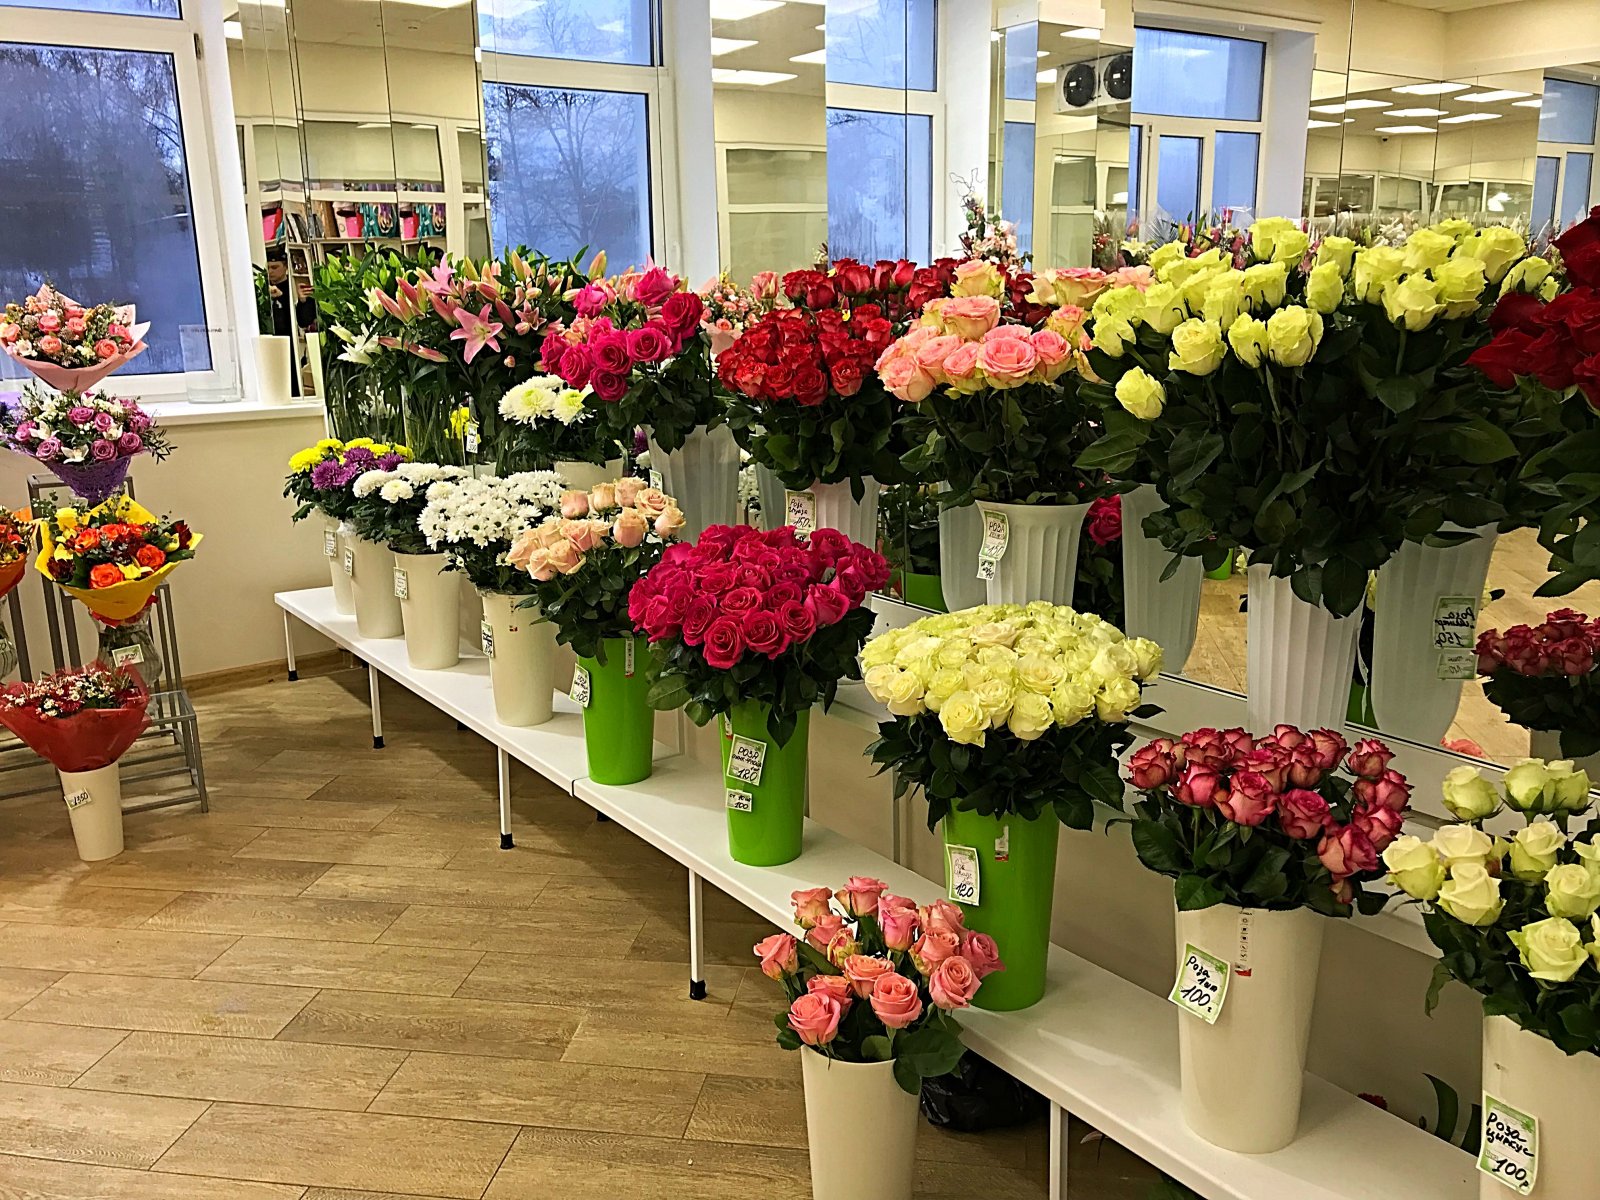 Купить розы в цветочном магазине. Цветы в цветочном магазине. Цветы магазинные. Ассортимент цветочного магазина. Букеты в магазине.